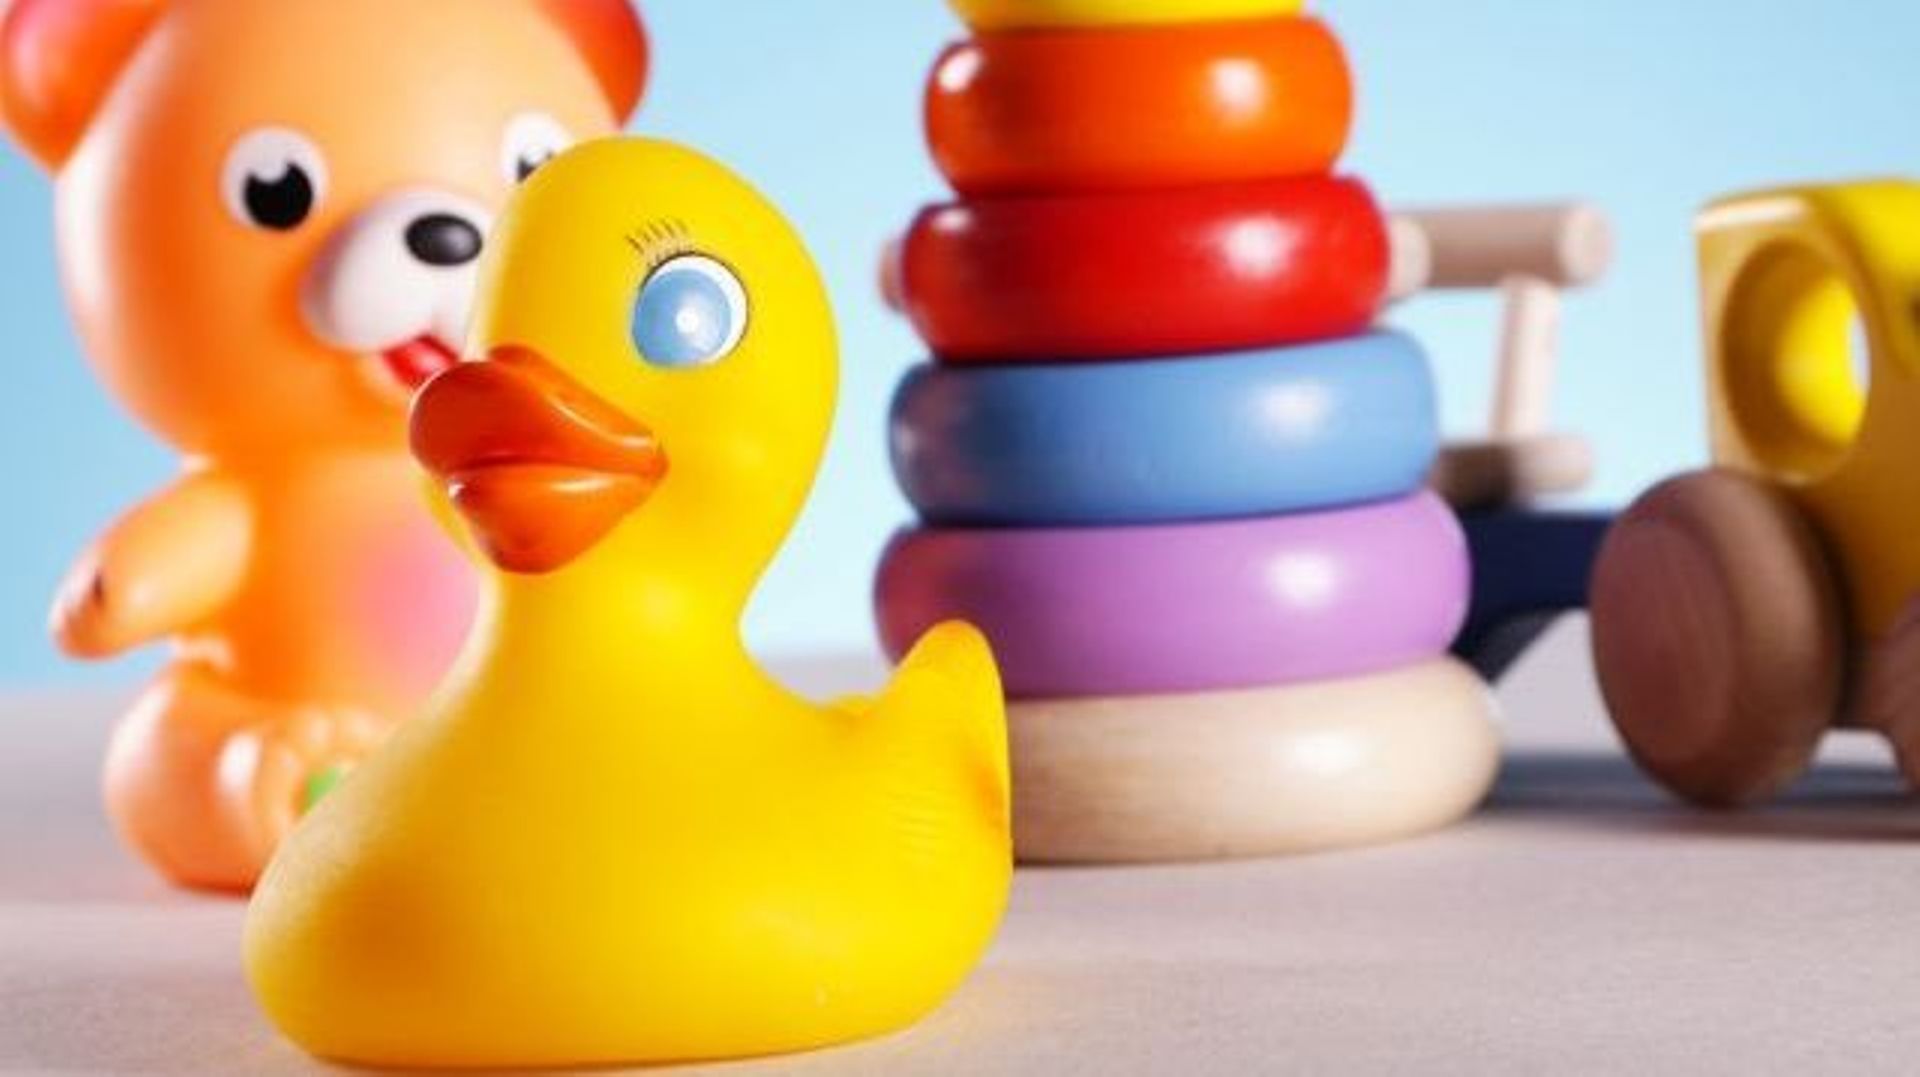 Des scientifiques avancent que certaines bactéries responsables d'infections pourraient survivre plusieurs mois sur des jouets partagés en crèche.